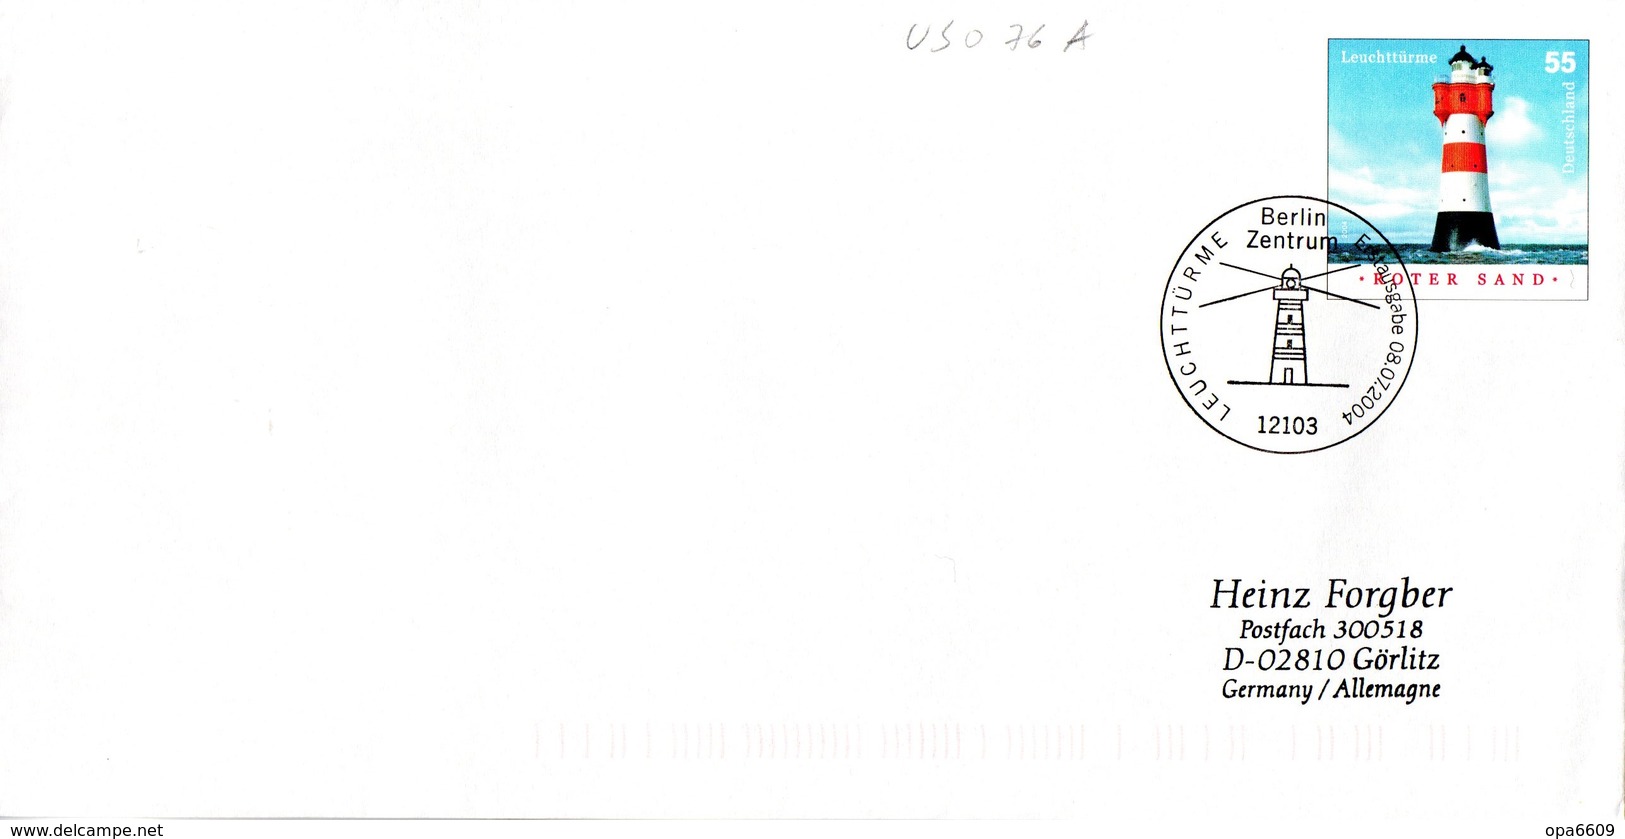 BRD Amtl.GZS-Umschlag (Langformat) USo 76A ,WSt 55(C) "Leuchtturm Roter Sand" ESSt 8.7.2004 BERLIN ZENTRUM - Umschläge - Gebraucht